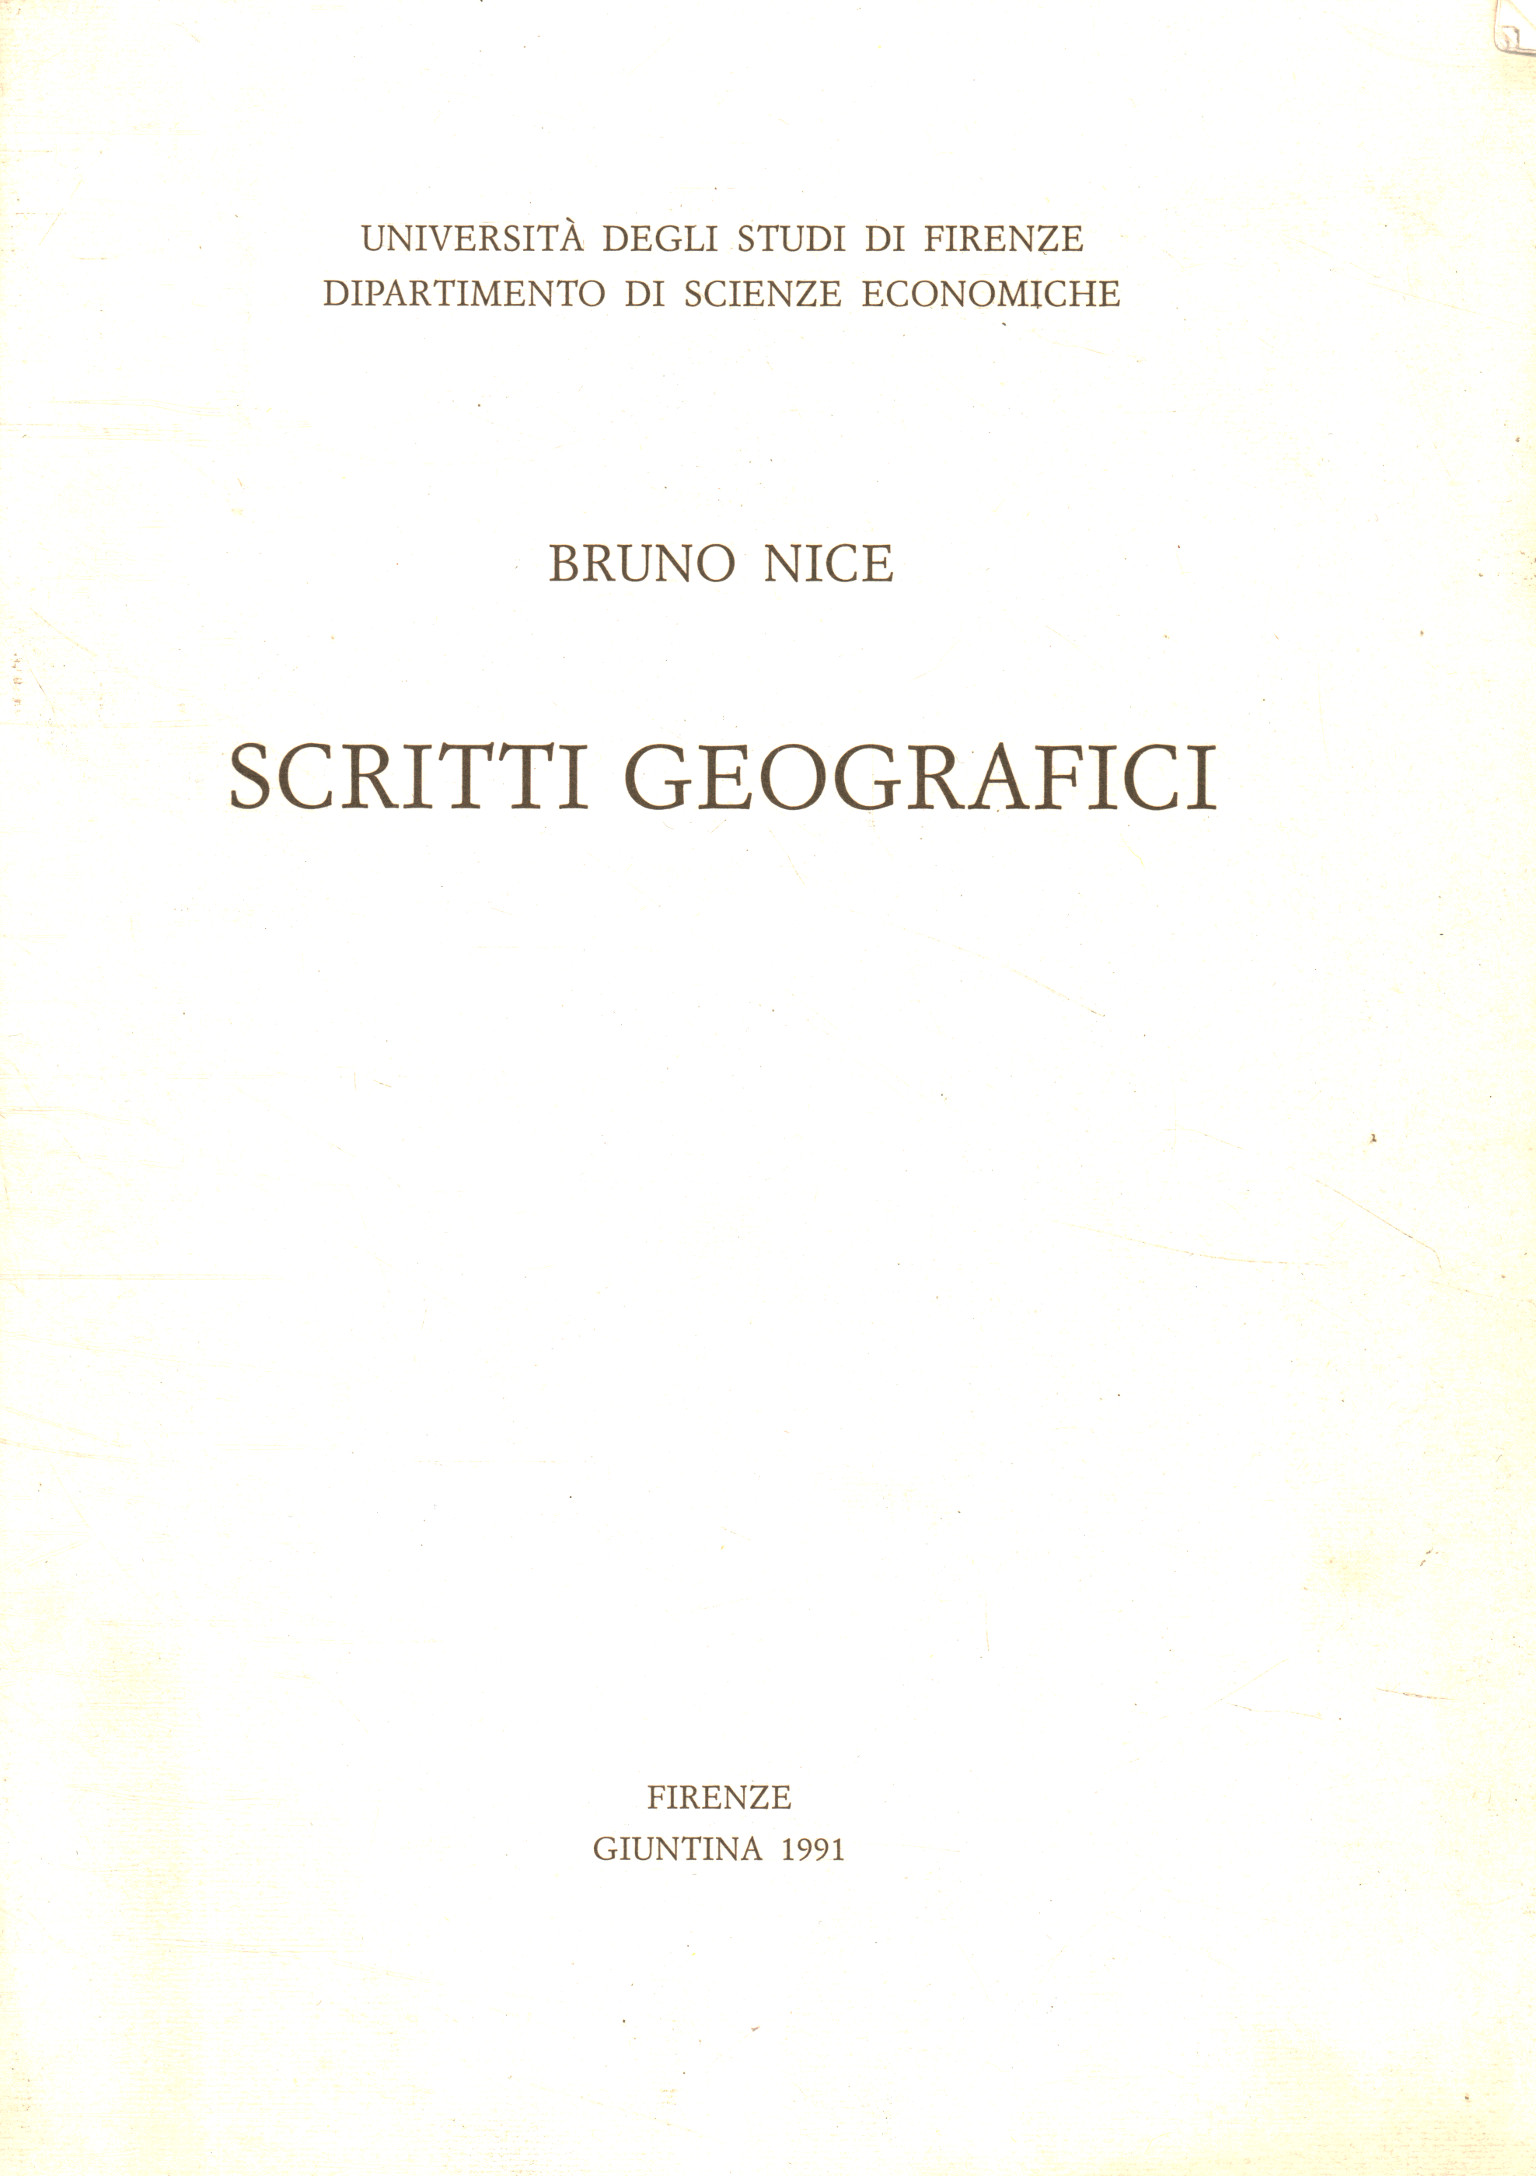 Escrituras geográficas (1939-1991)